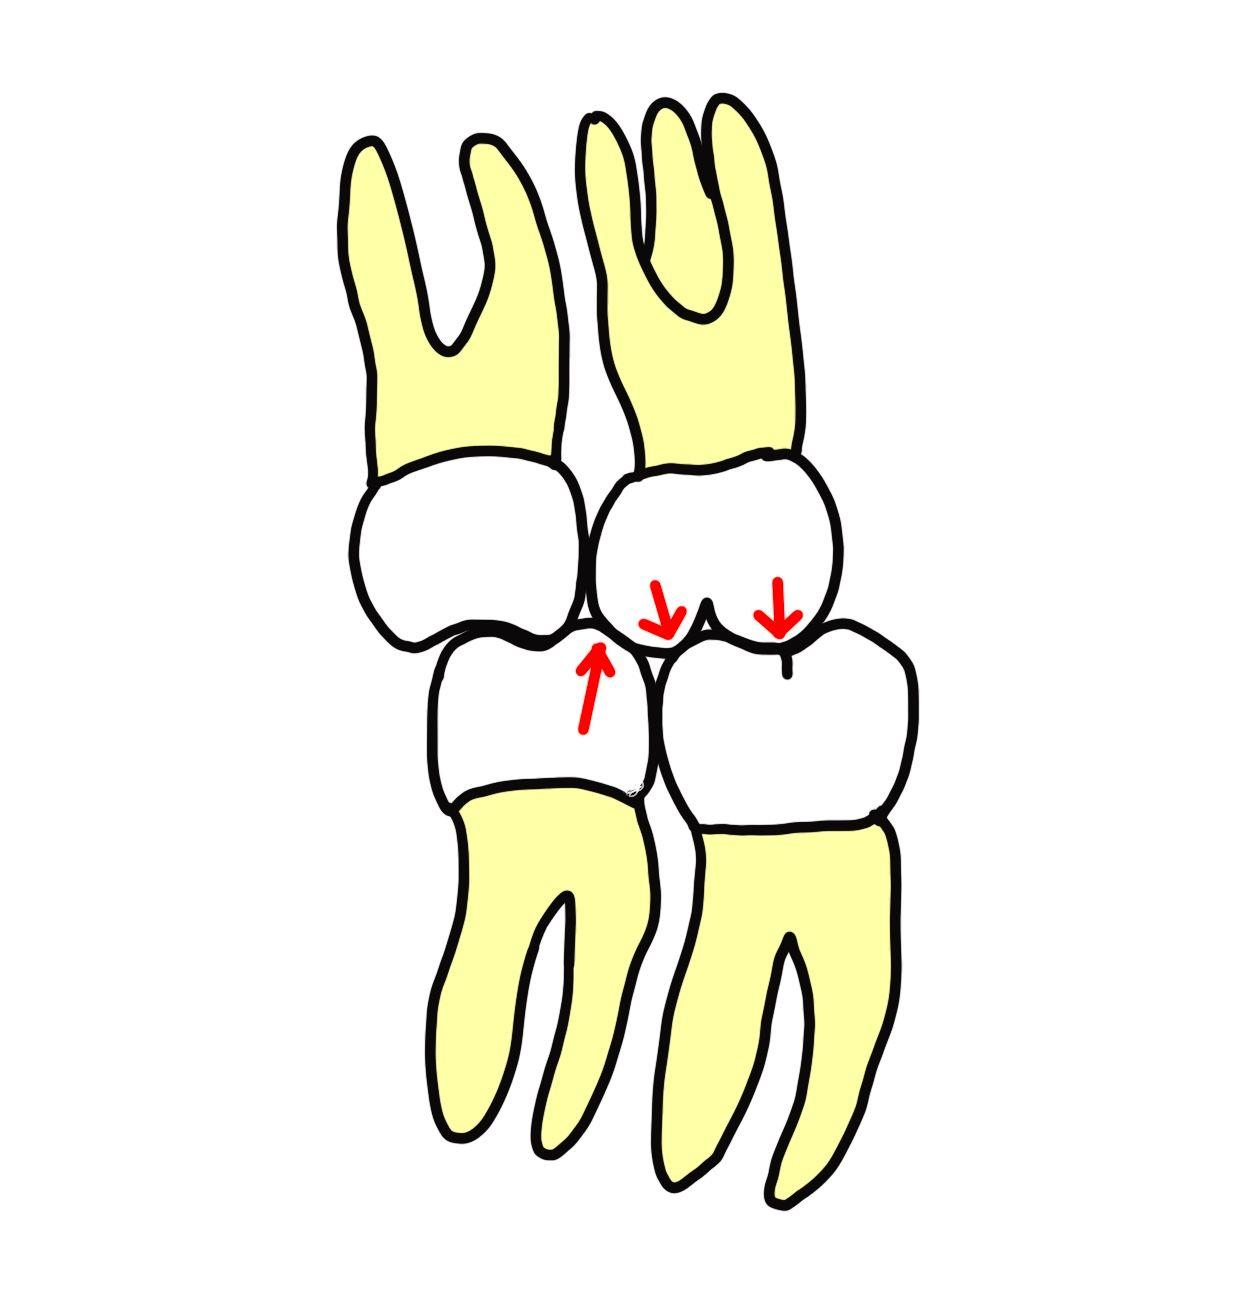 1歯対2歯での咬合関係